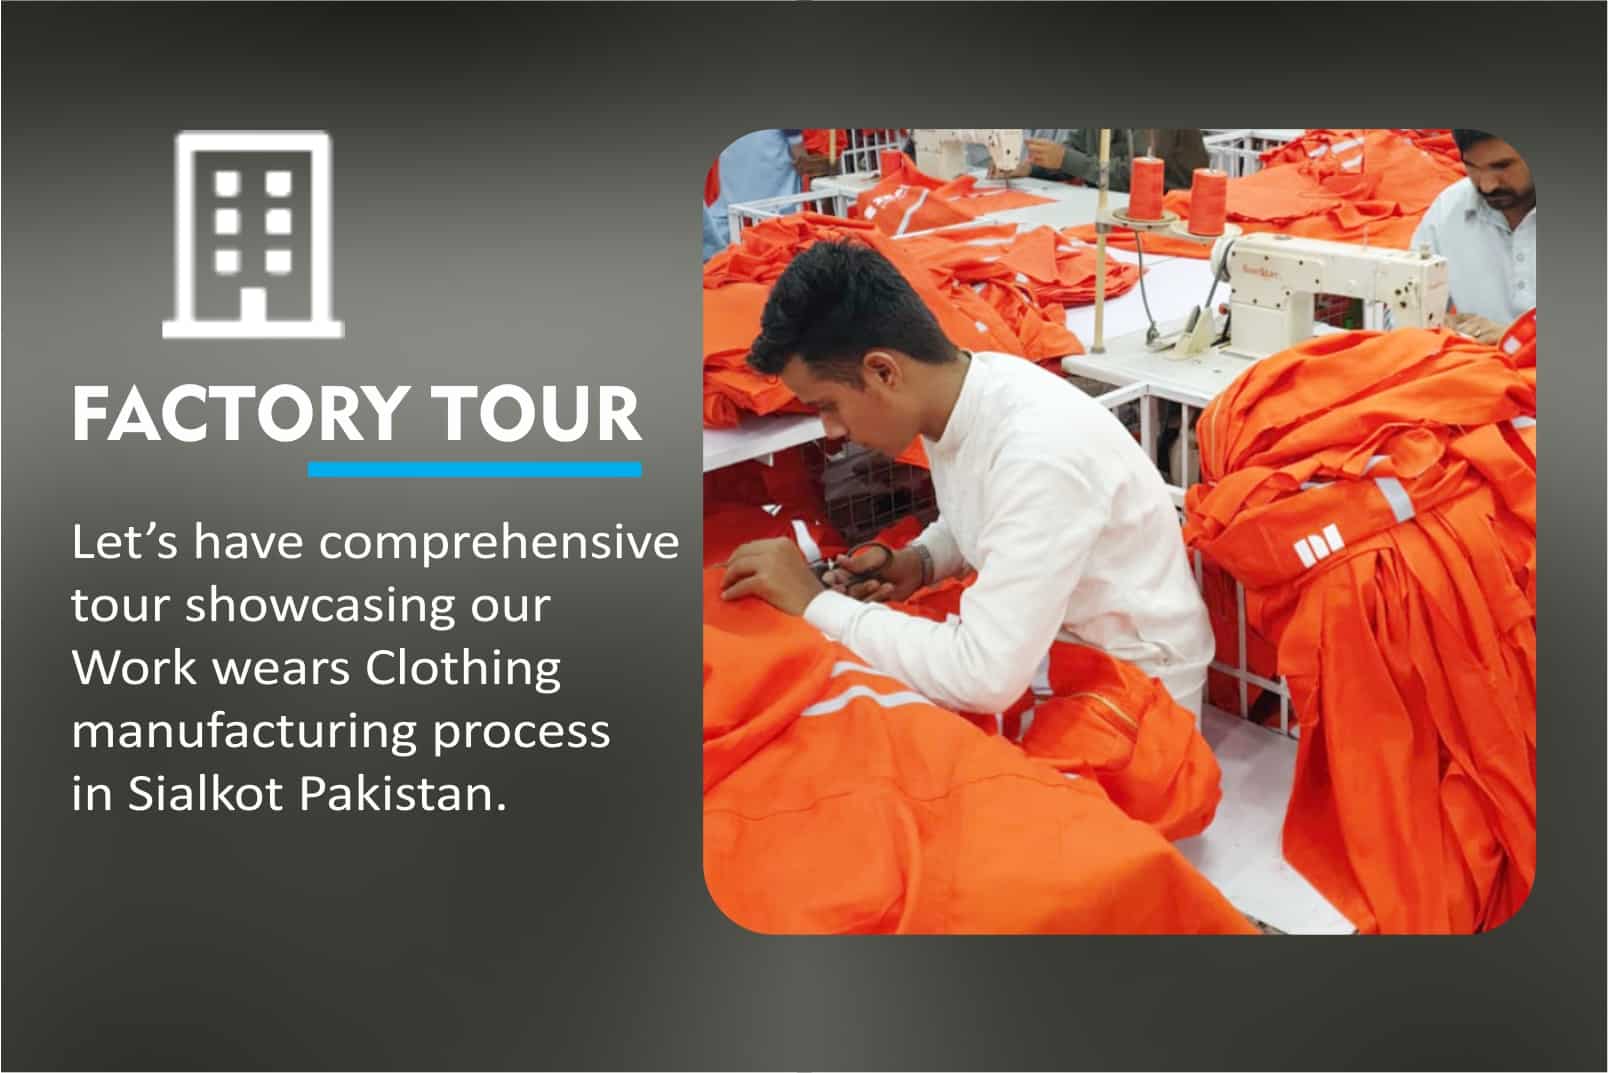 Workwear Clothing Manfacturer in Pakistan